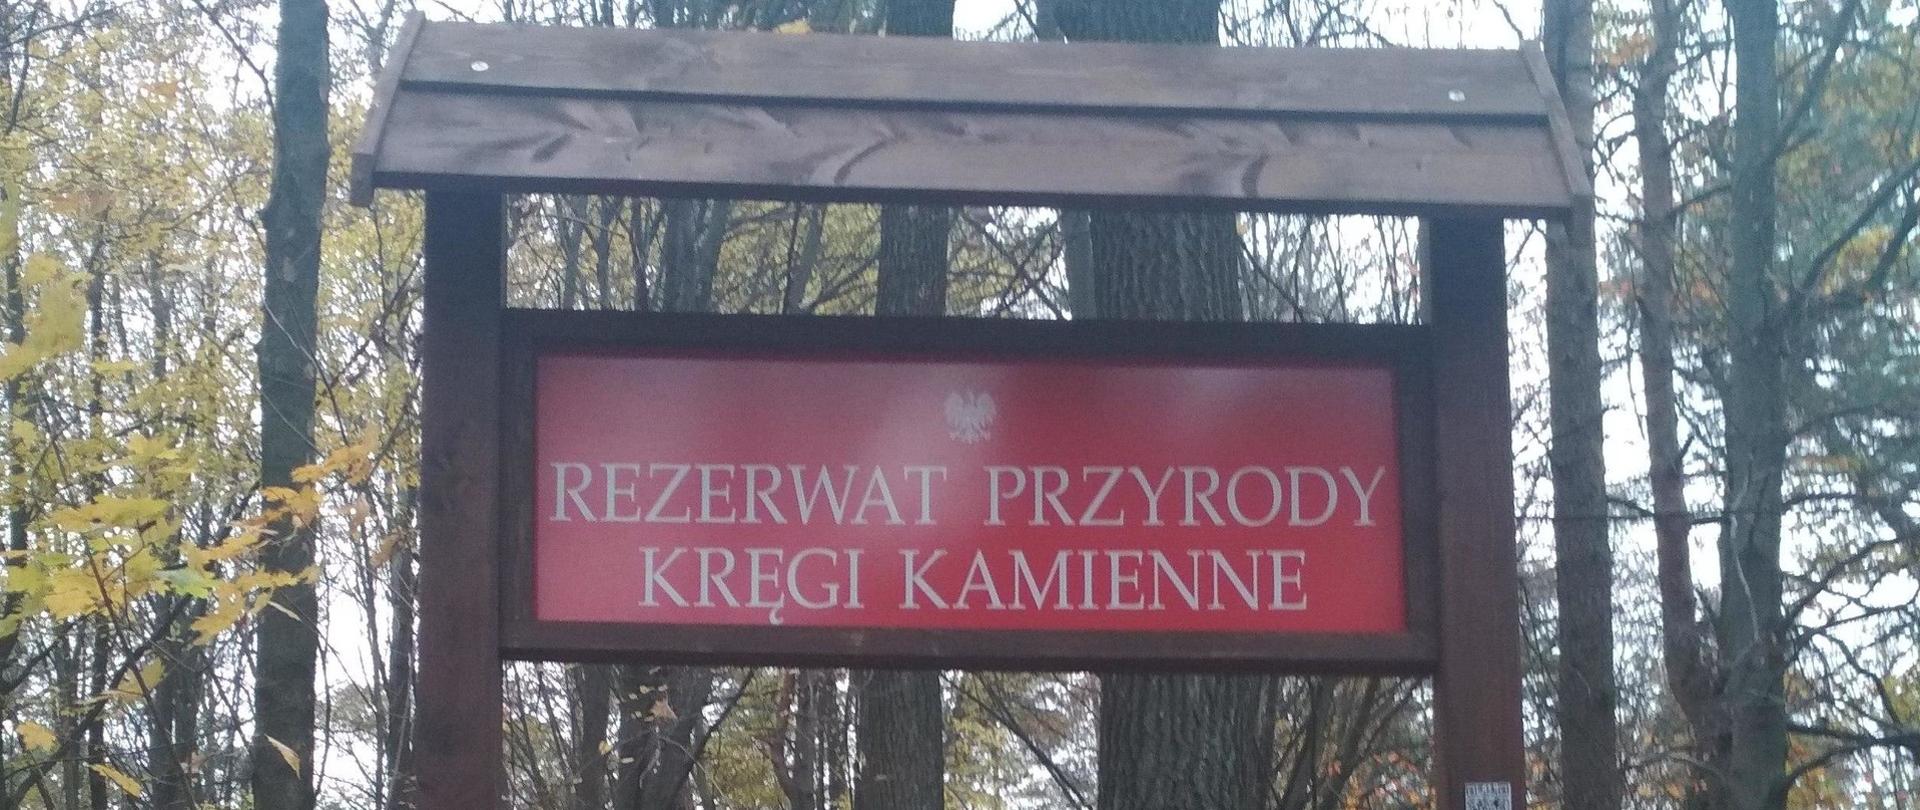 Świętokrzyskie rezerwaty przyrody: czerwona tablica informacyjna w lesie pod daszkiem z napisem Rezerwat przyrody Kręgi Kamienne